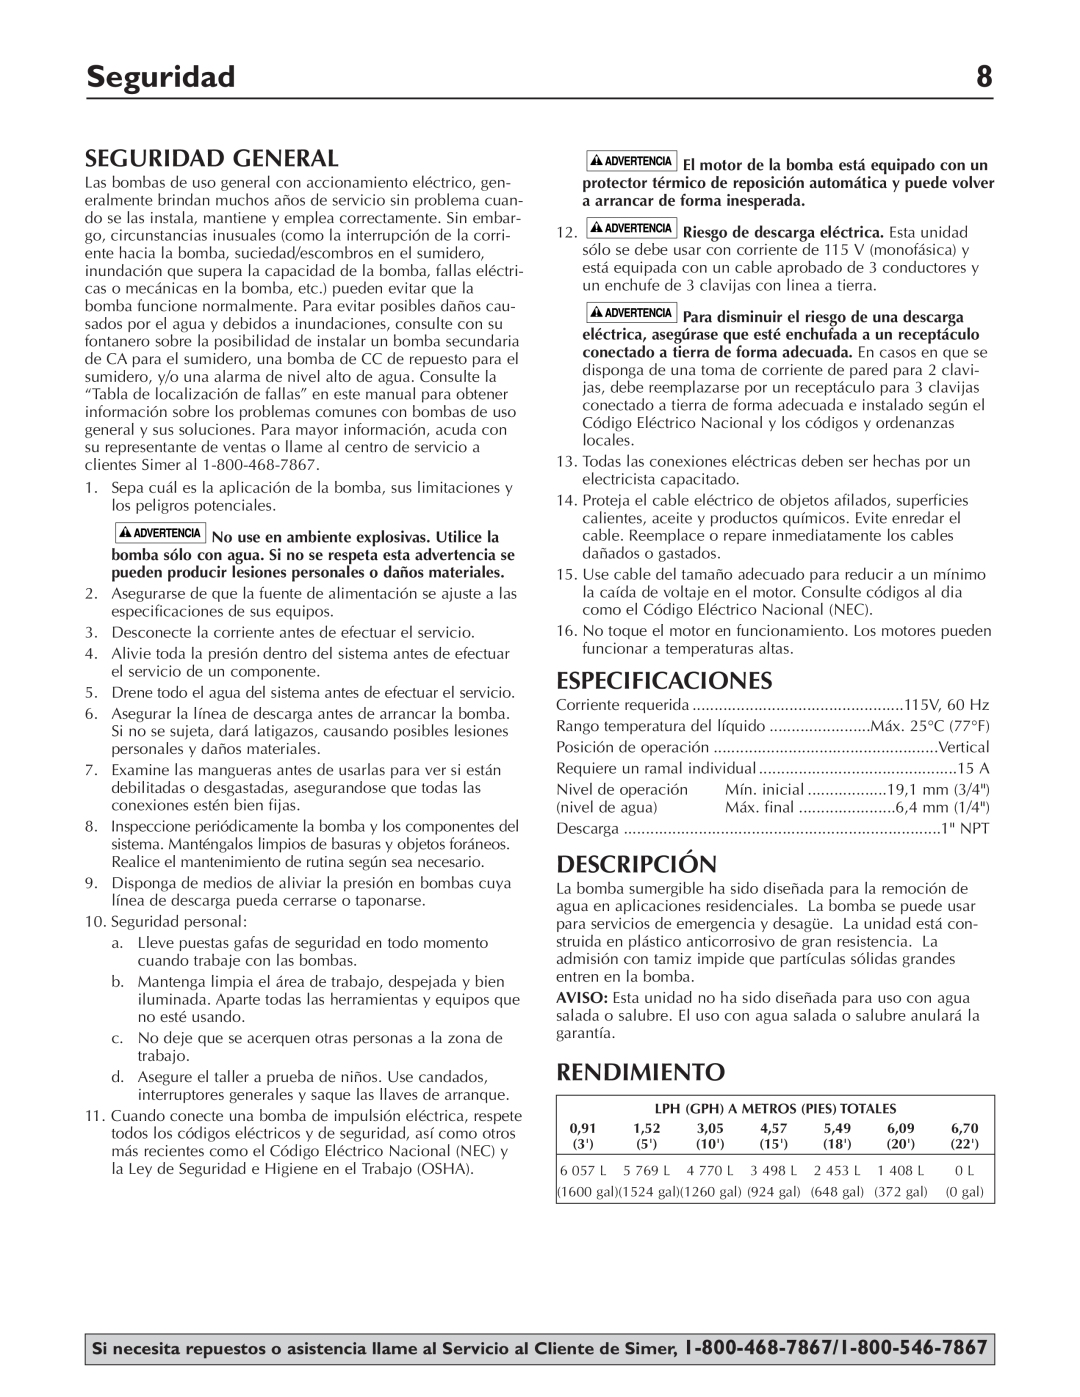 Simer Pumps 2330-03 owner manual Seguridad General, Especificaciones, Descripción, Rendimiento 